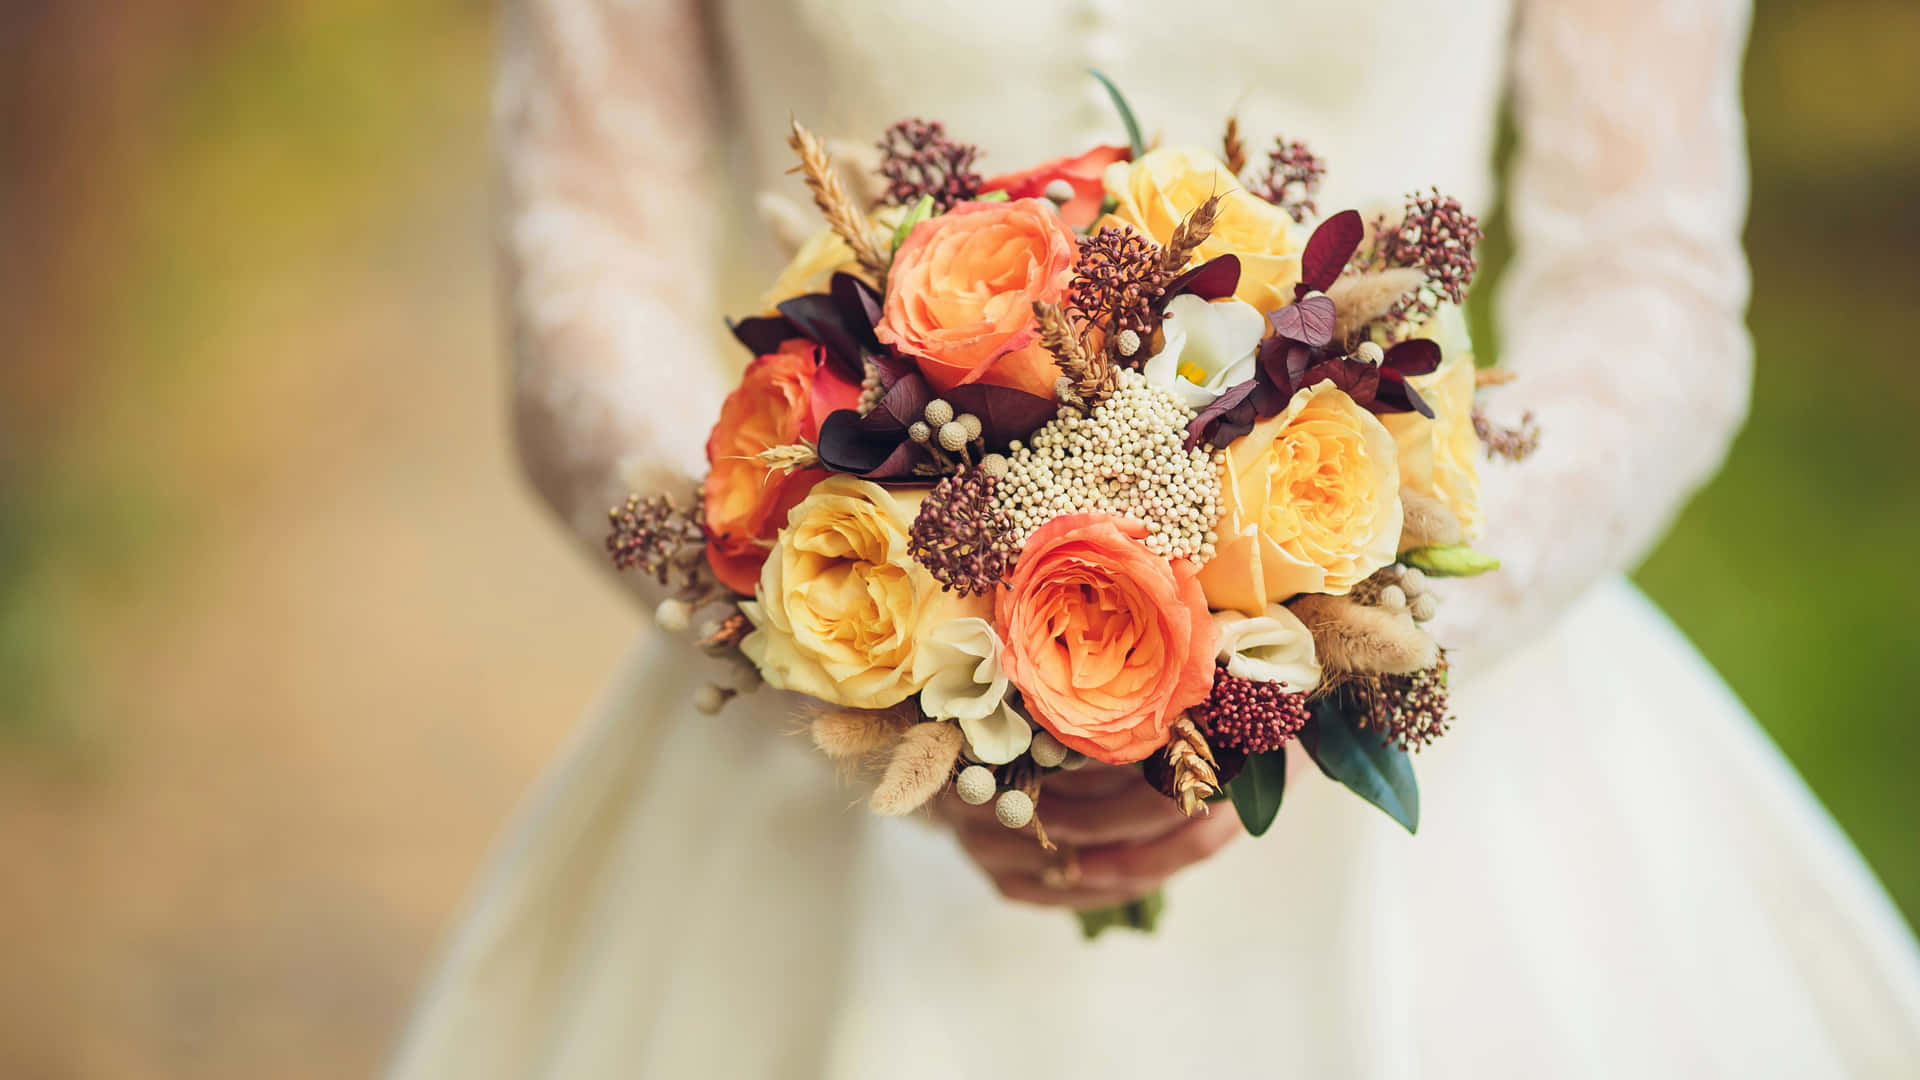 Elegant Wedding Bouquet in Bride's Hands Wallpaper